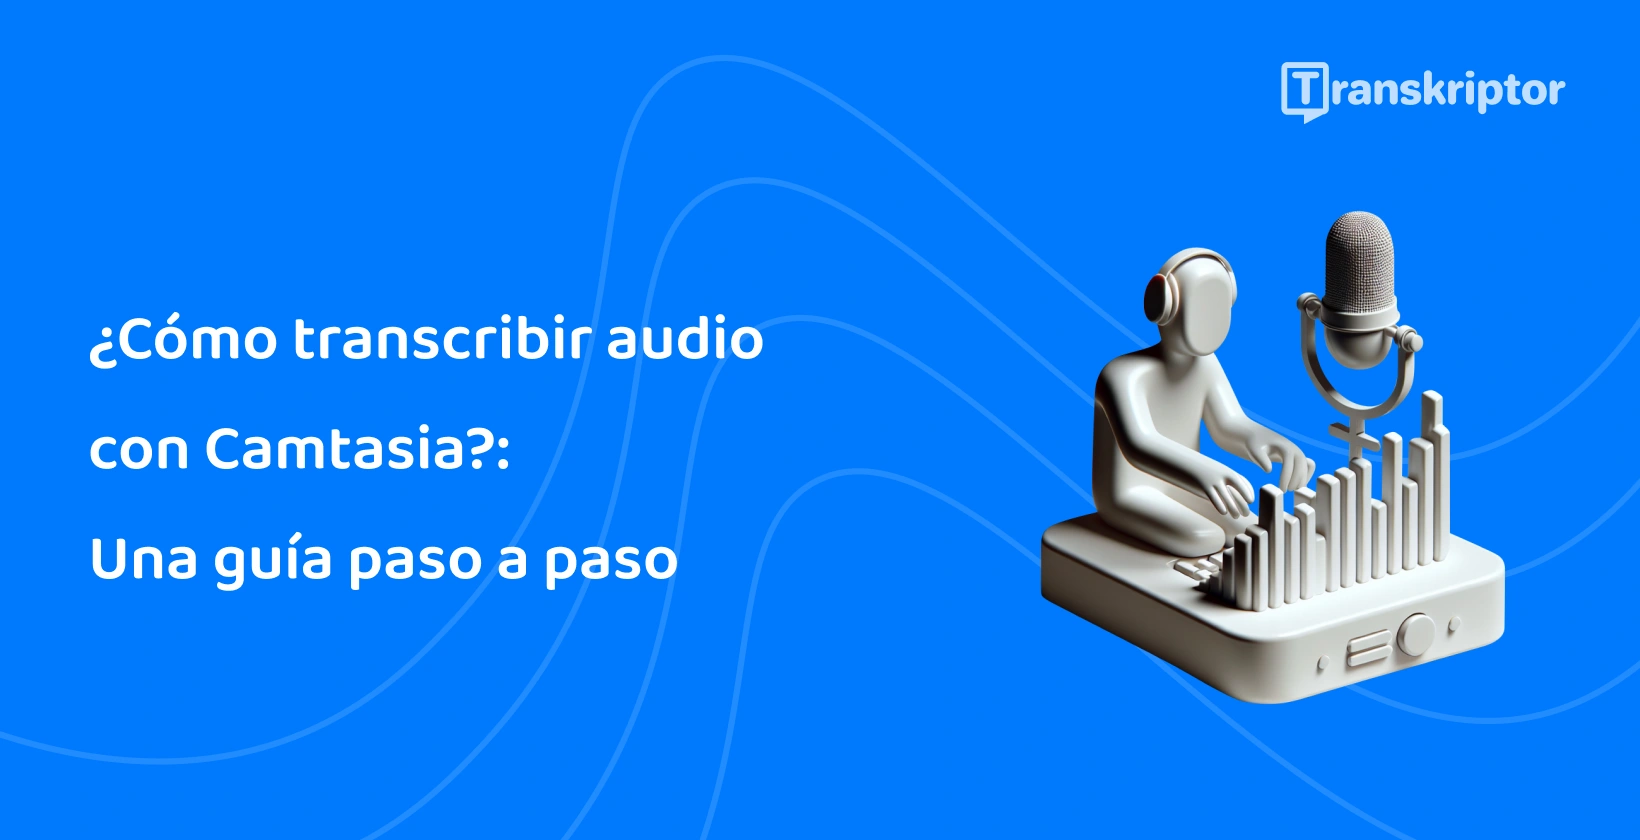 Proceso de transcripción de audio de Camtasia con una figura usando mesa de mezclas y micrófono.